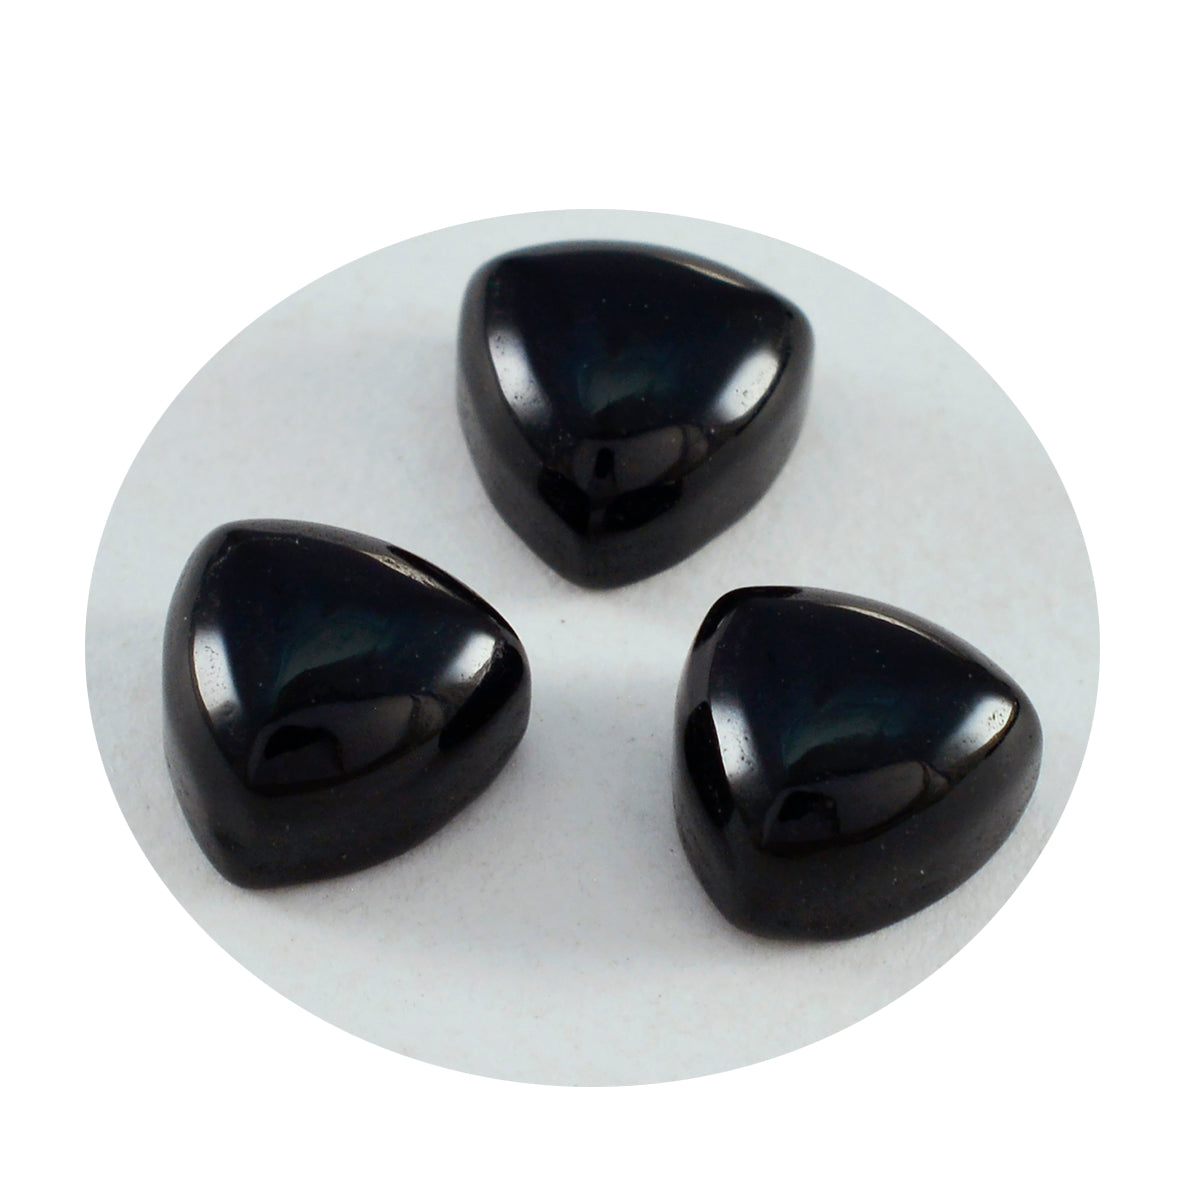 Riyogems 1 cabujón de ónix negro, 0.394 x 0.394 in, forma de billón, piedra preciosa de calidad A+1